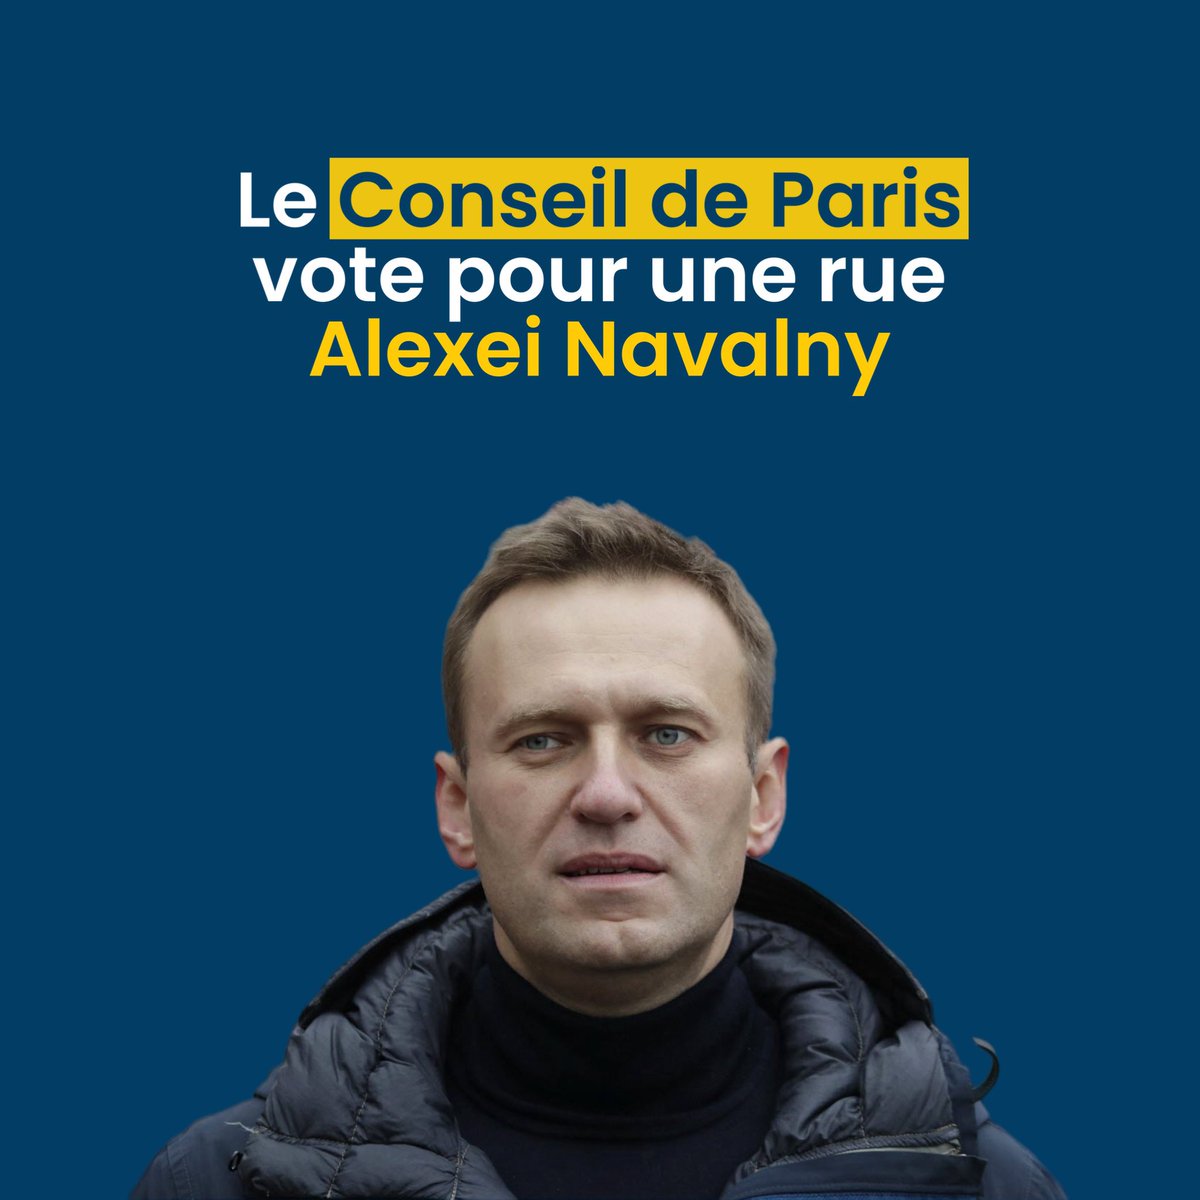 Le #ConseildeParis vient de voter à l’unanimité pour qu’une rue proche de l’Ambassade de Russie porte désormais le nom d’Alexeï #Navalny. Avec ce geste, @Paris lui rend hommage et salue l’ensemble des citoyens russes engagés dans le combat pour la liberté. Ces combats, que